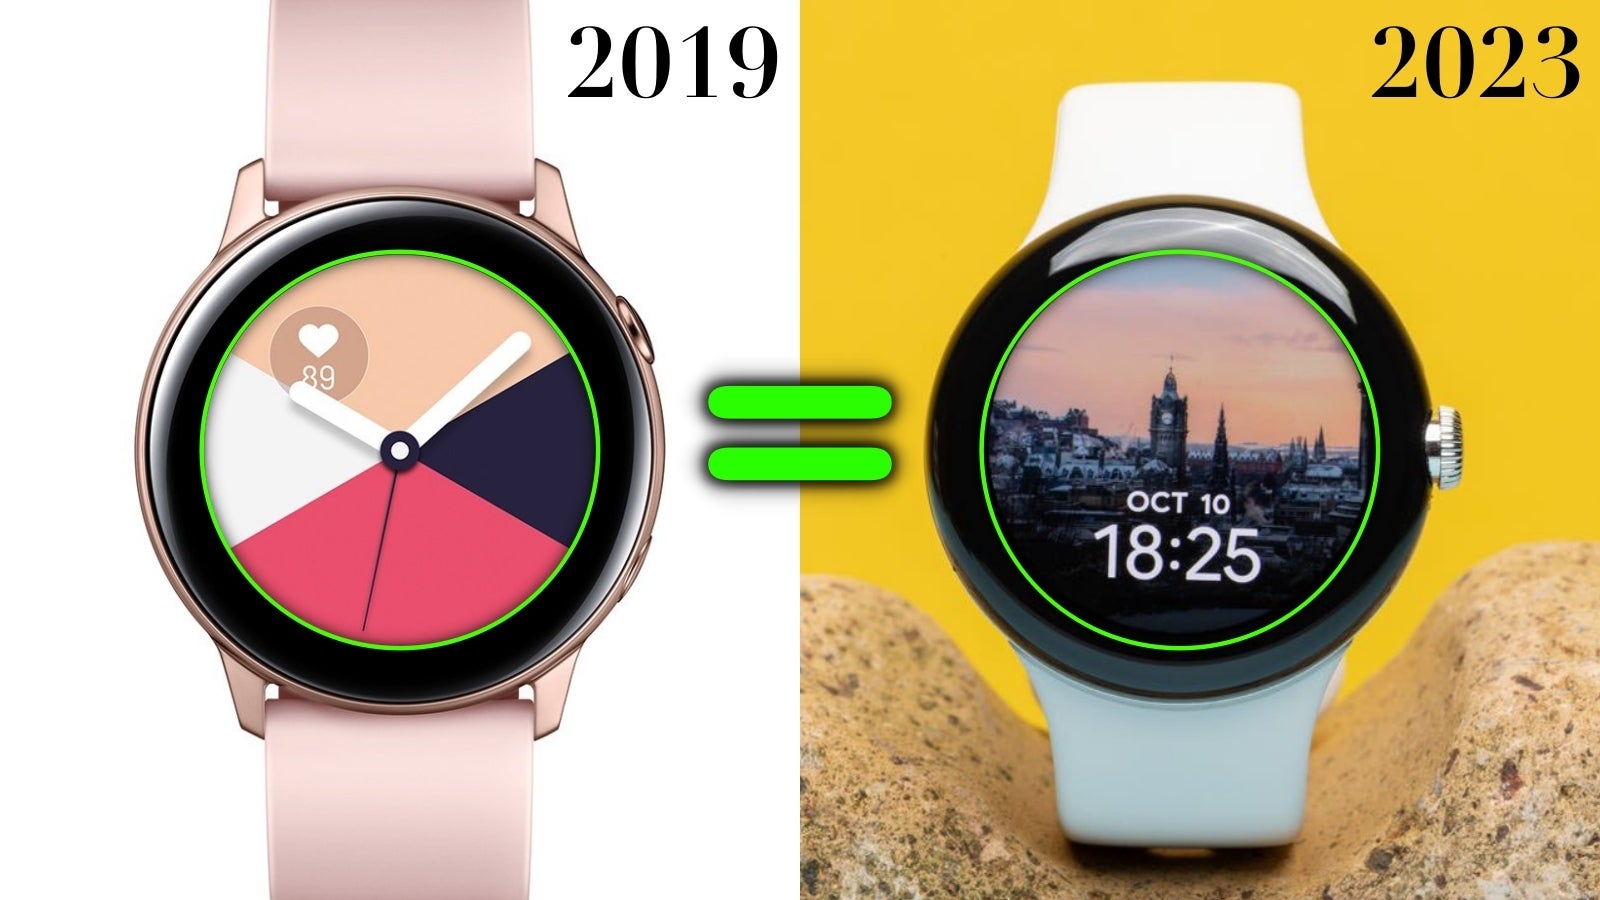 2023 Pixel Watch 2 cihazım, 2019 Galaxy Watch Active ile aynı çerçeve boyutuna sahip ve bu hiç hoş değil.  - Pixel Watch 3: Google, olmayı reddettiğim (akıllı saat) kişiye 